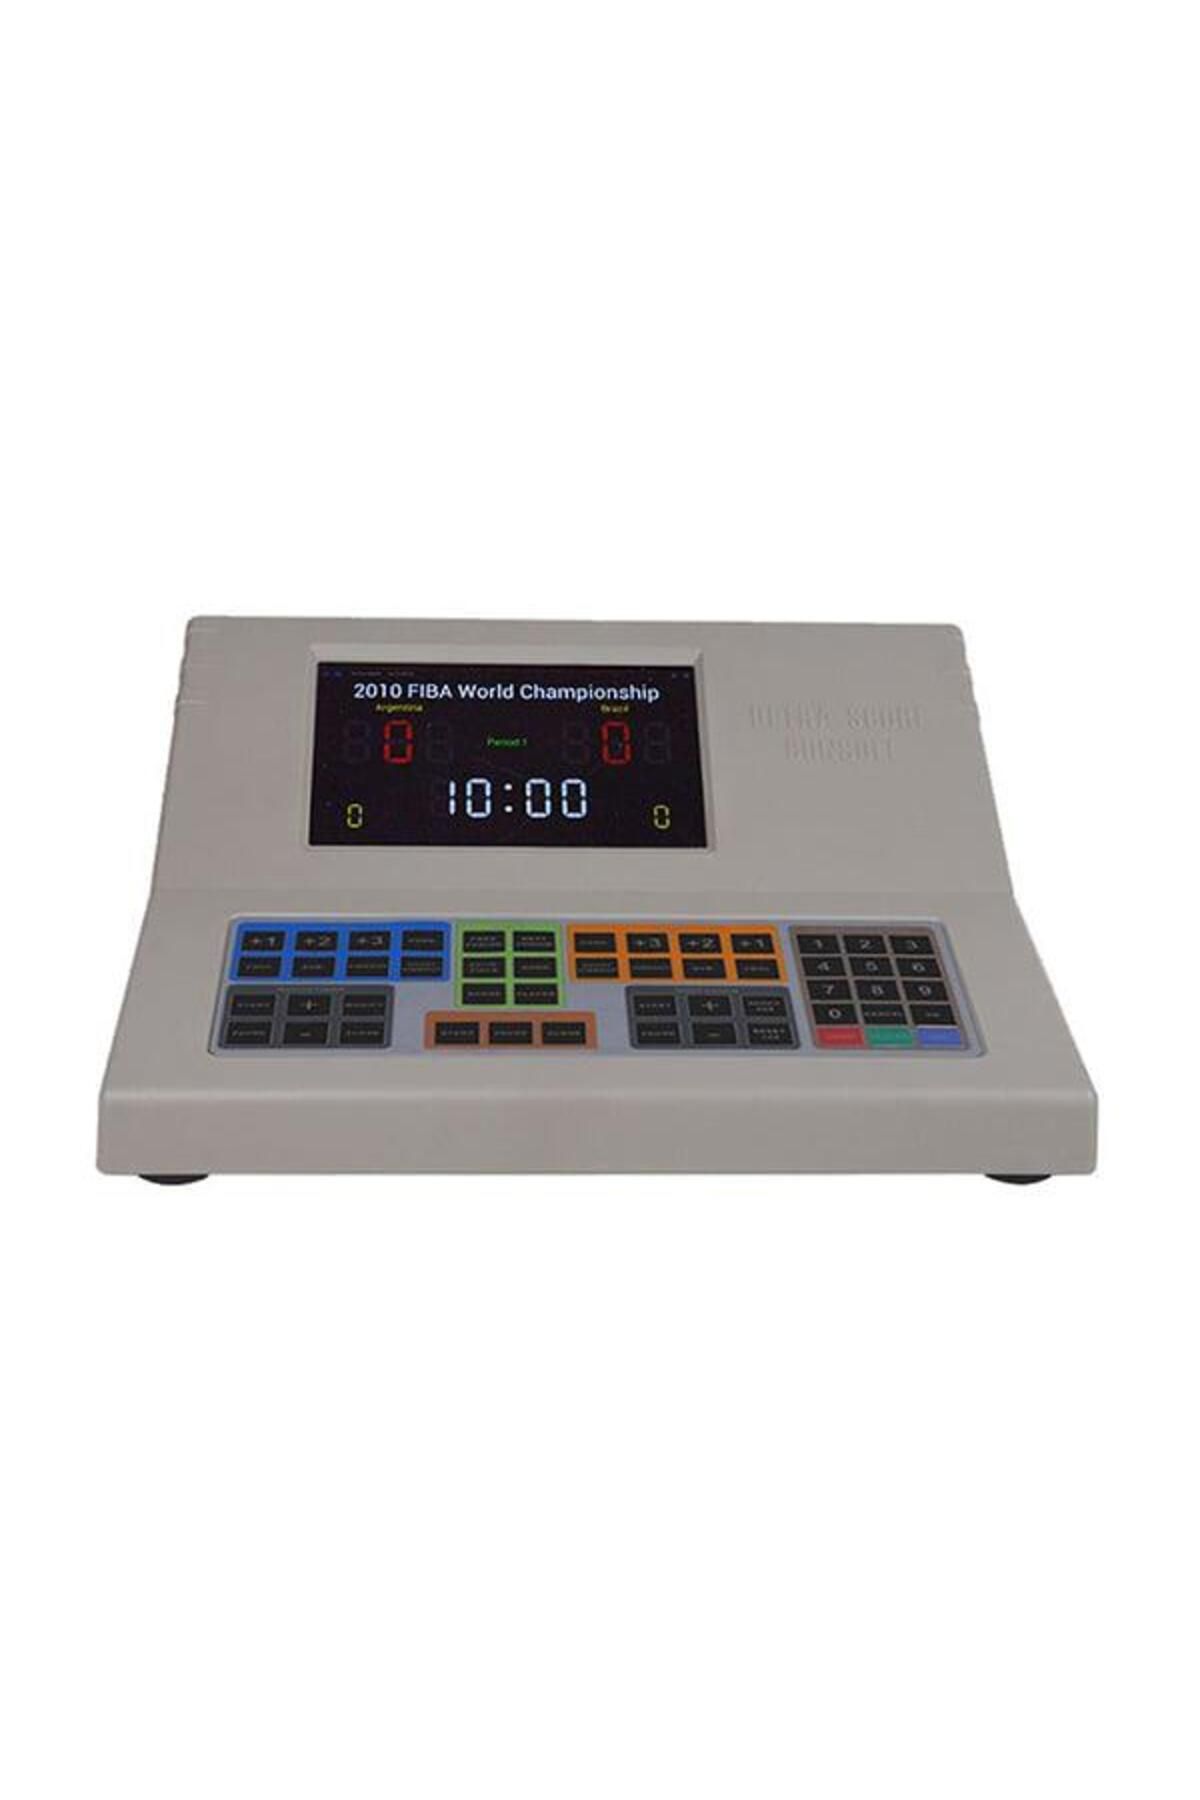 Hasyılmaz Lsp-gc16 Skorbord Hakem Kontrol Paneli - Maç Skor Ve Zaman Kontrol Sistemi